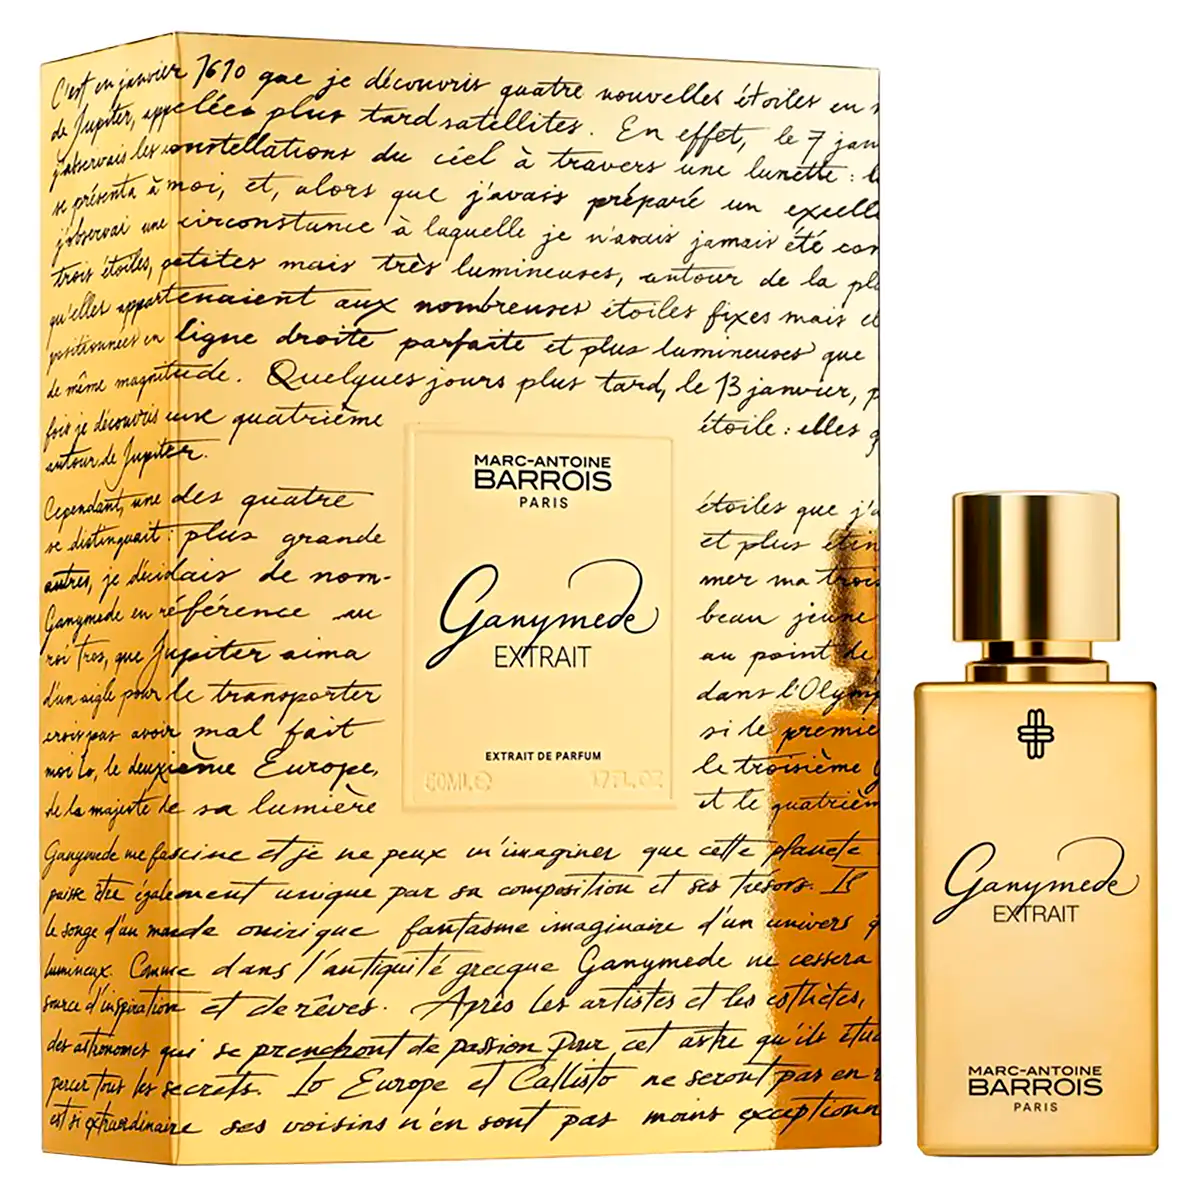 Marc-Antoine Barrois Ganymede Extrait de Parfum 50ml